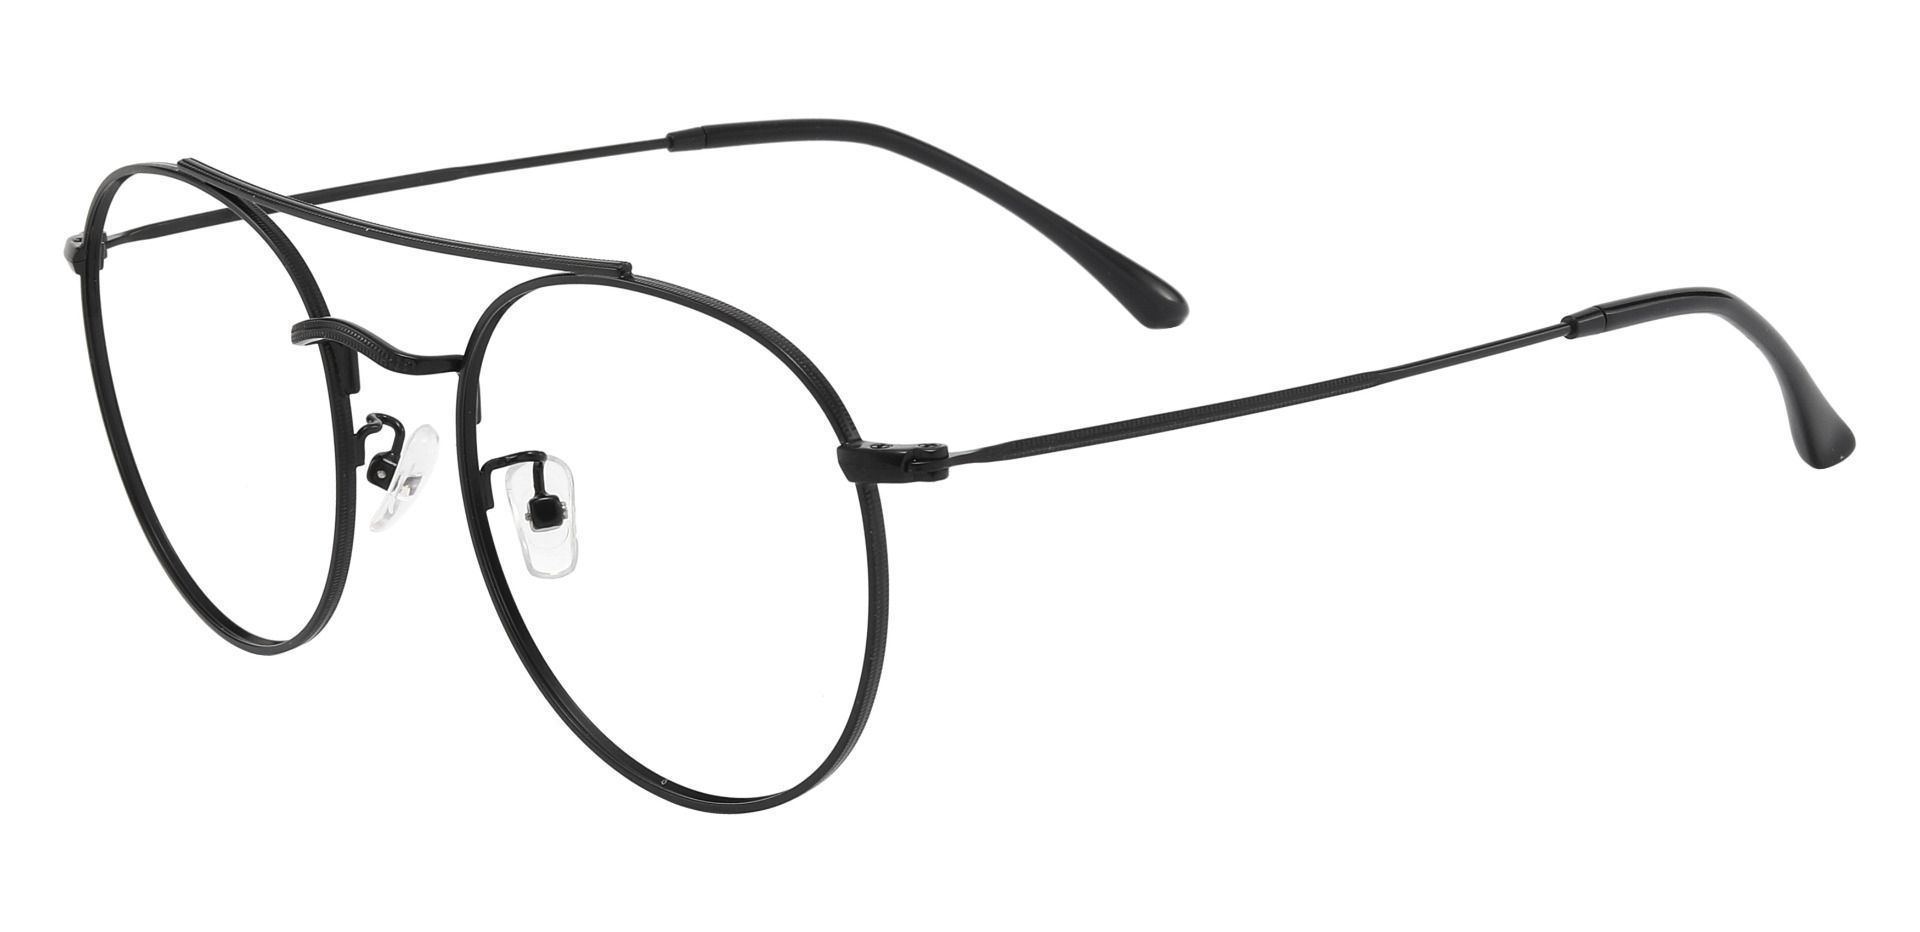 Junction Aviator Lined Bifocal Glasses - Black